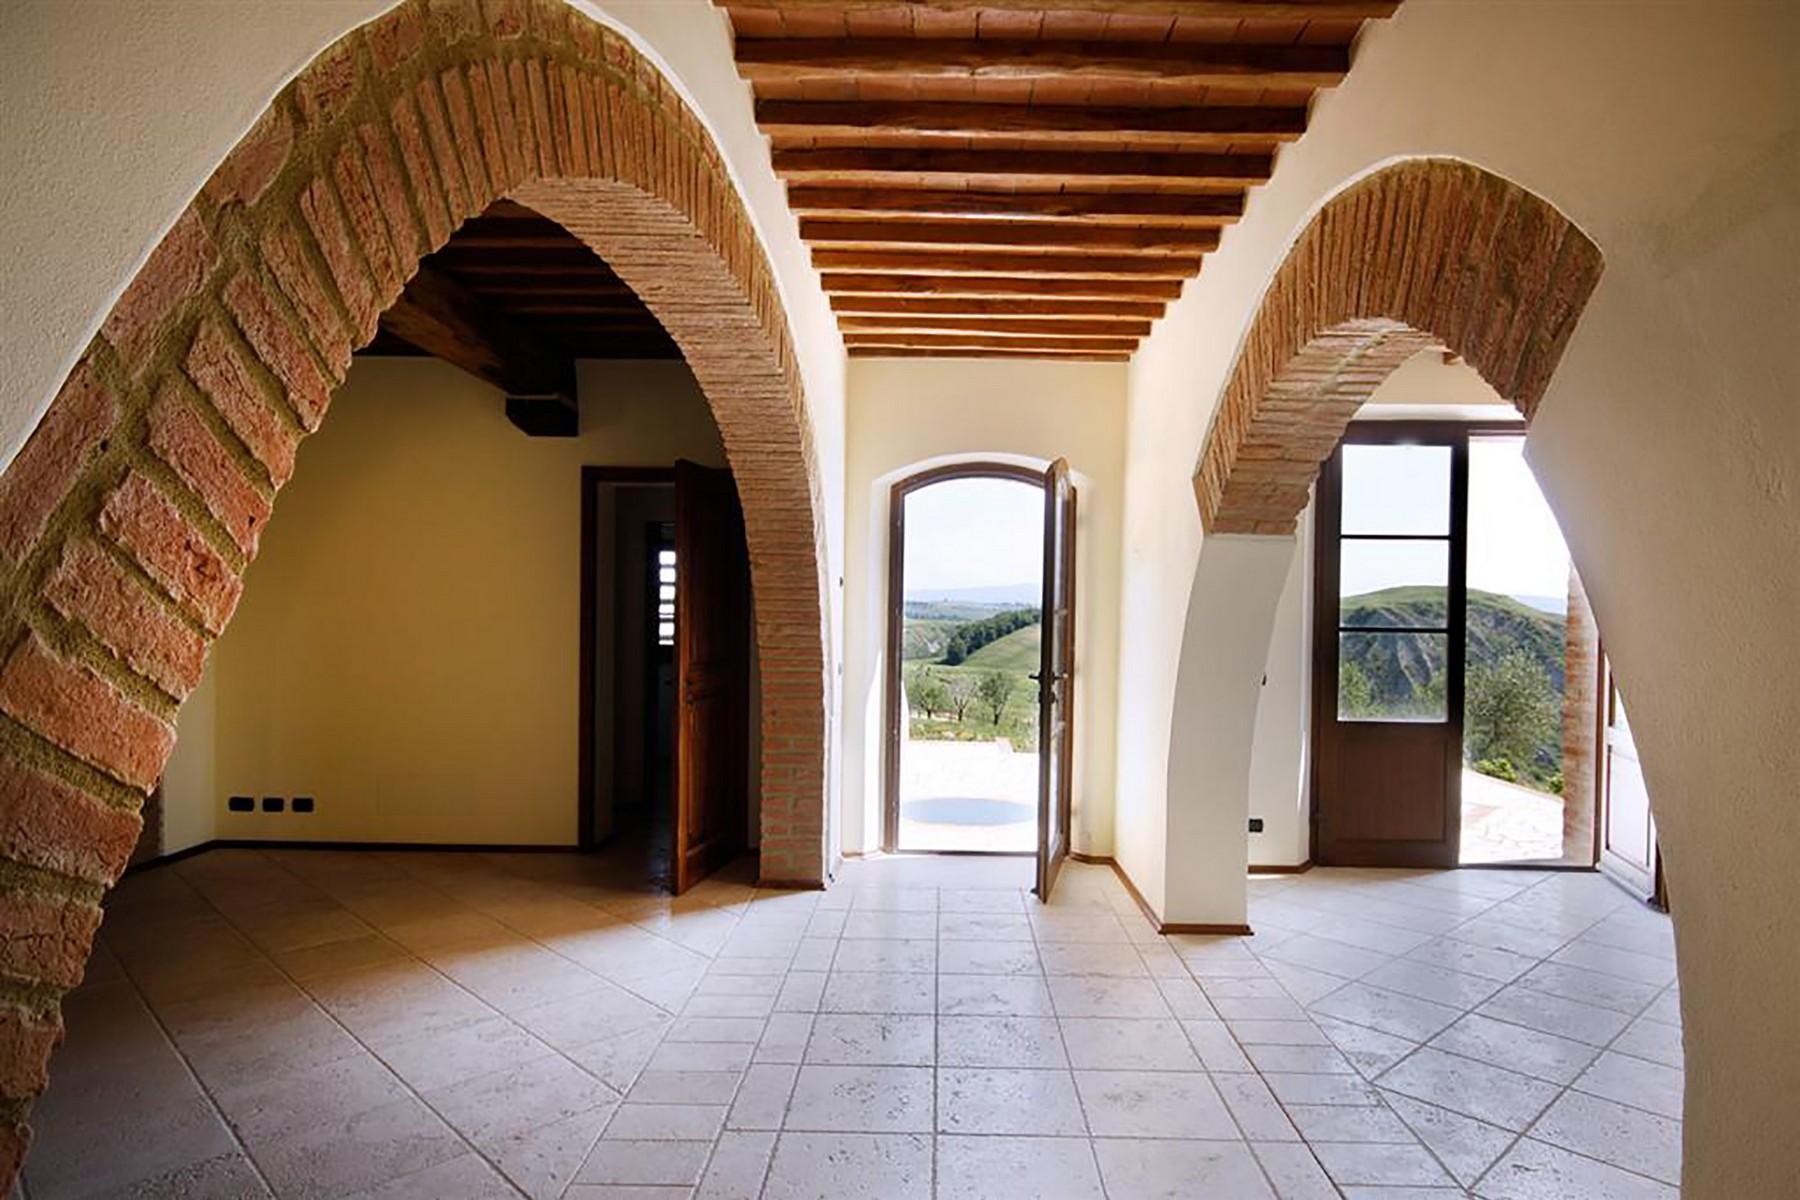 Wunderschönes Bauernhaus mit atemberaubenden Blick auf die Crete Senesi - 8